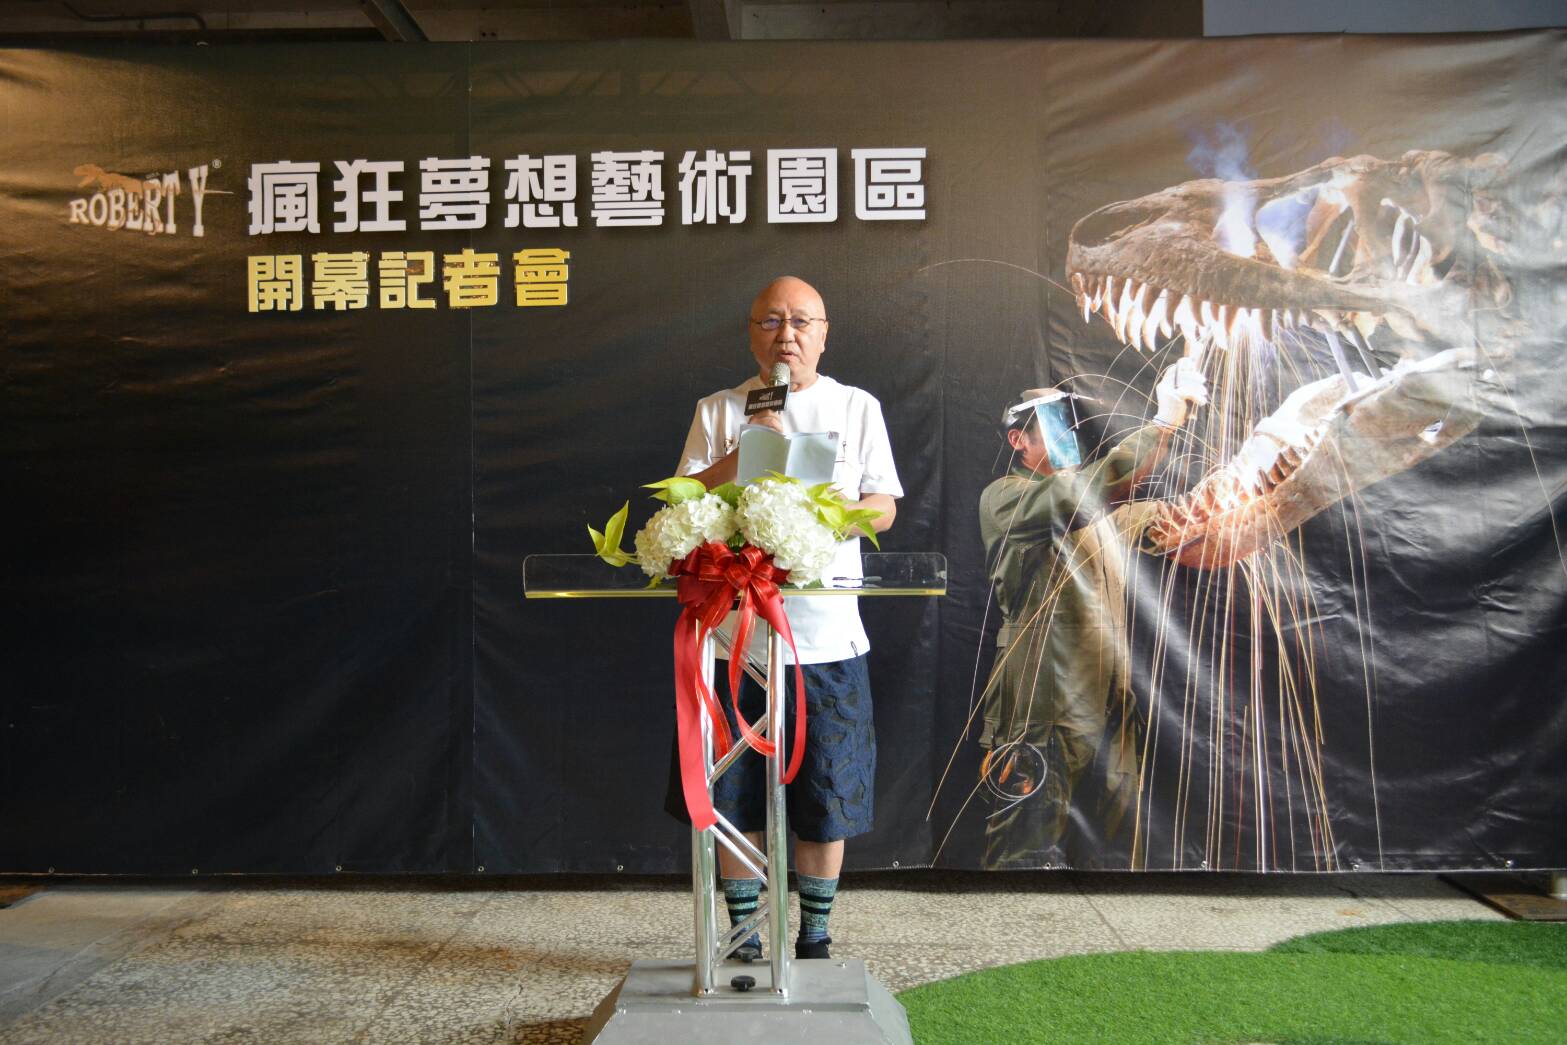 亞洲第一暴龍化石真跡落腳宜蘭 『Robert Y 瘋狂夢想藝術園區』開幕了